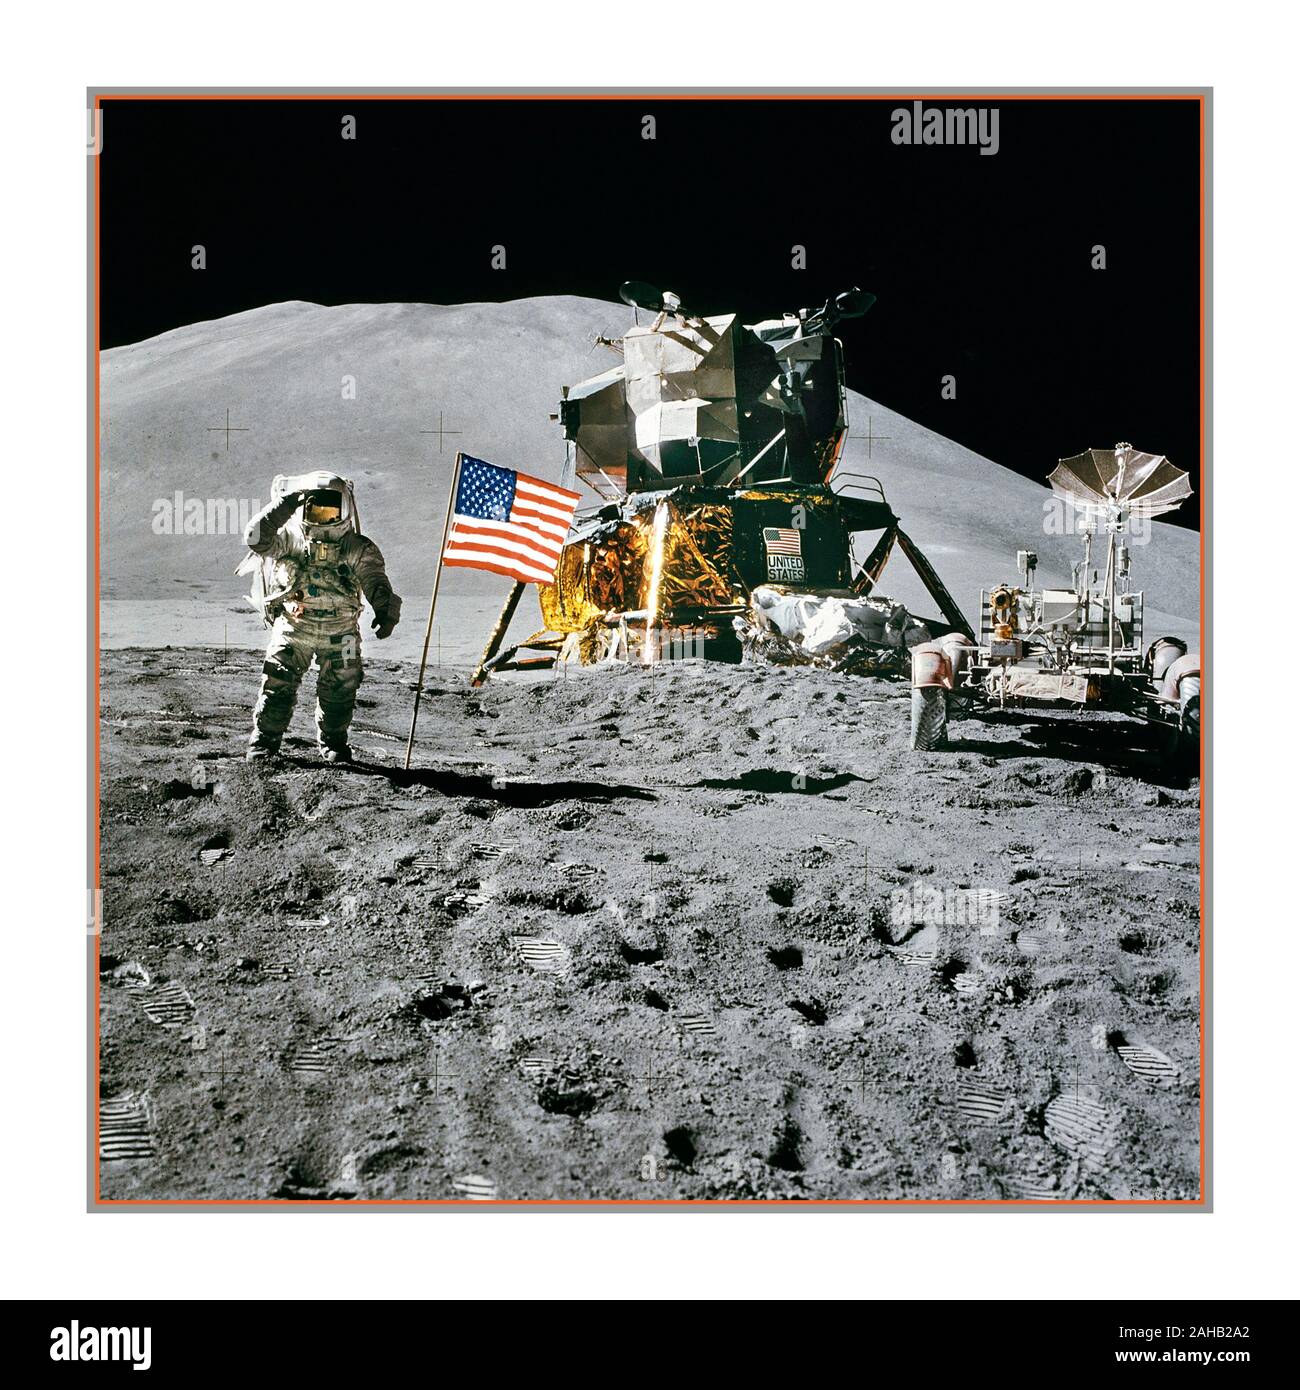 LUNA ATTERRAGGIO 1971 Apollo 15 Lunar modulo pilota James Irwin saluta la bandiera degli Stati Uniti sulla luna. L'astronauta James B. Irwin, pilota a modulo lunare, dà un saluto militare mentre si trova accanto alla bandiera statunitense schierata durante l'attività extraveicolare lunare (EVA) dell'Apollo 15 presso il sito di atterraggio di Hadley-Appennine. Il modulo Lunar 'Falcon' è parzialmente visibile sulla destra. Il Delta di Hadley sorge sullo sfondo a circa 4,000 metri sopra la pianura. Apollo 15 è stata la nona missione con equipaggio nel programma Apollo degli Stati Uniti, e la quarta a atterrare sulla Luna. Foto Stock